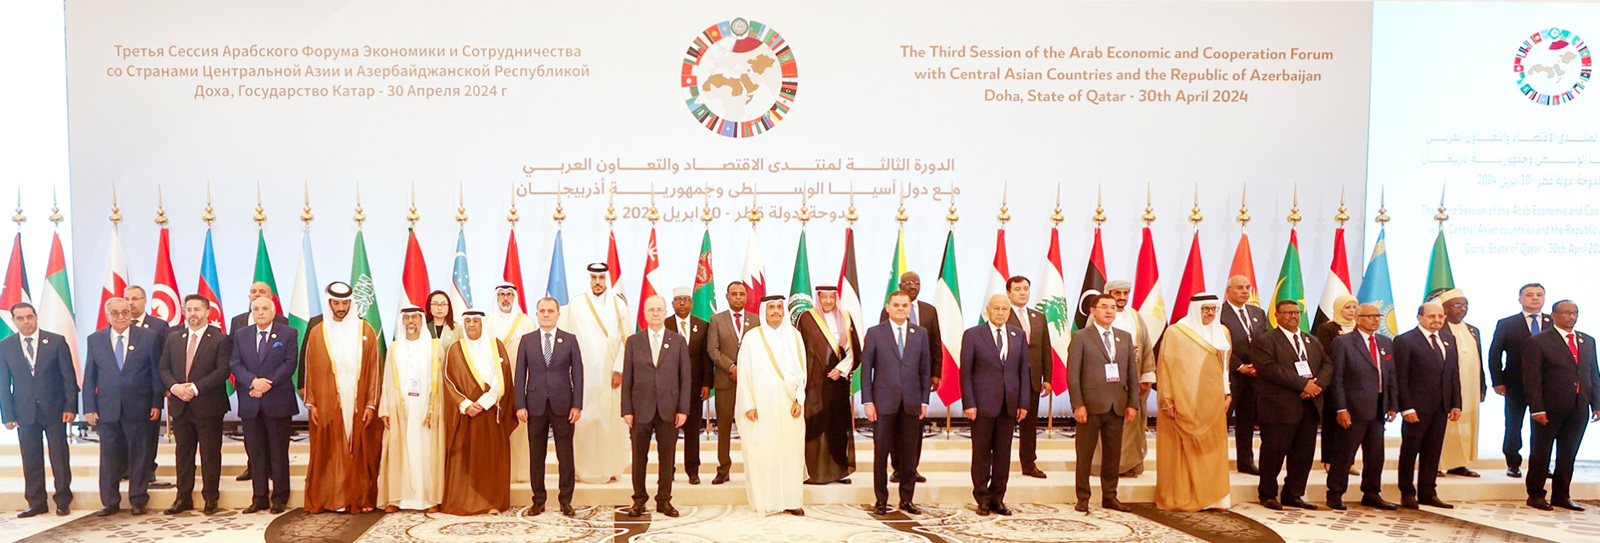 Lancement du Forum économique et de coopération arabo-asiatique avec l'Asie centrale et l'Azerbaïdjan